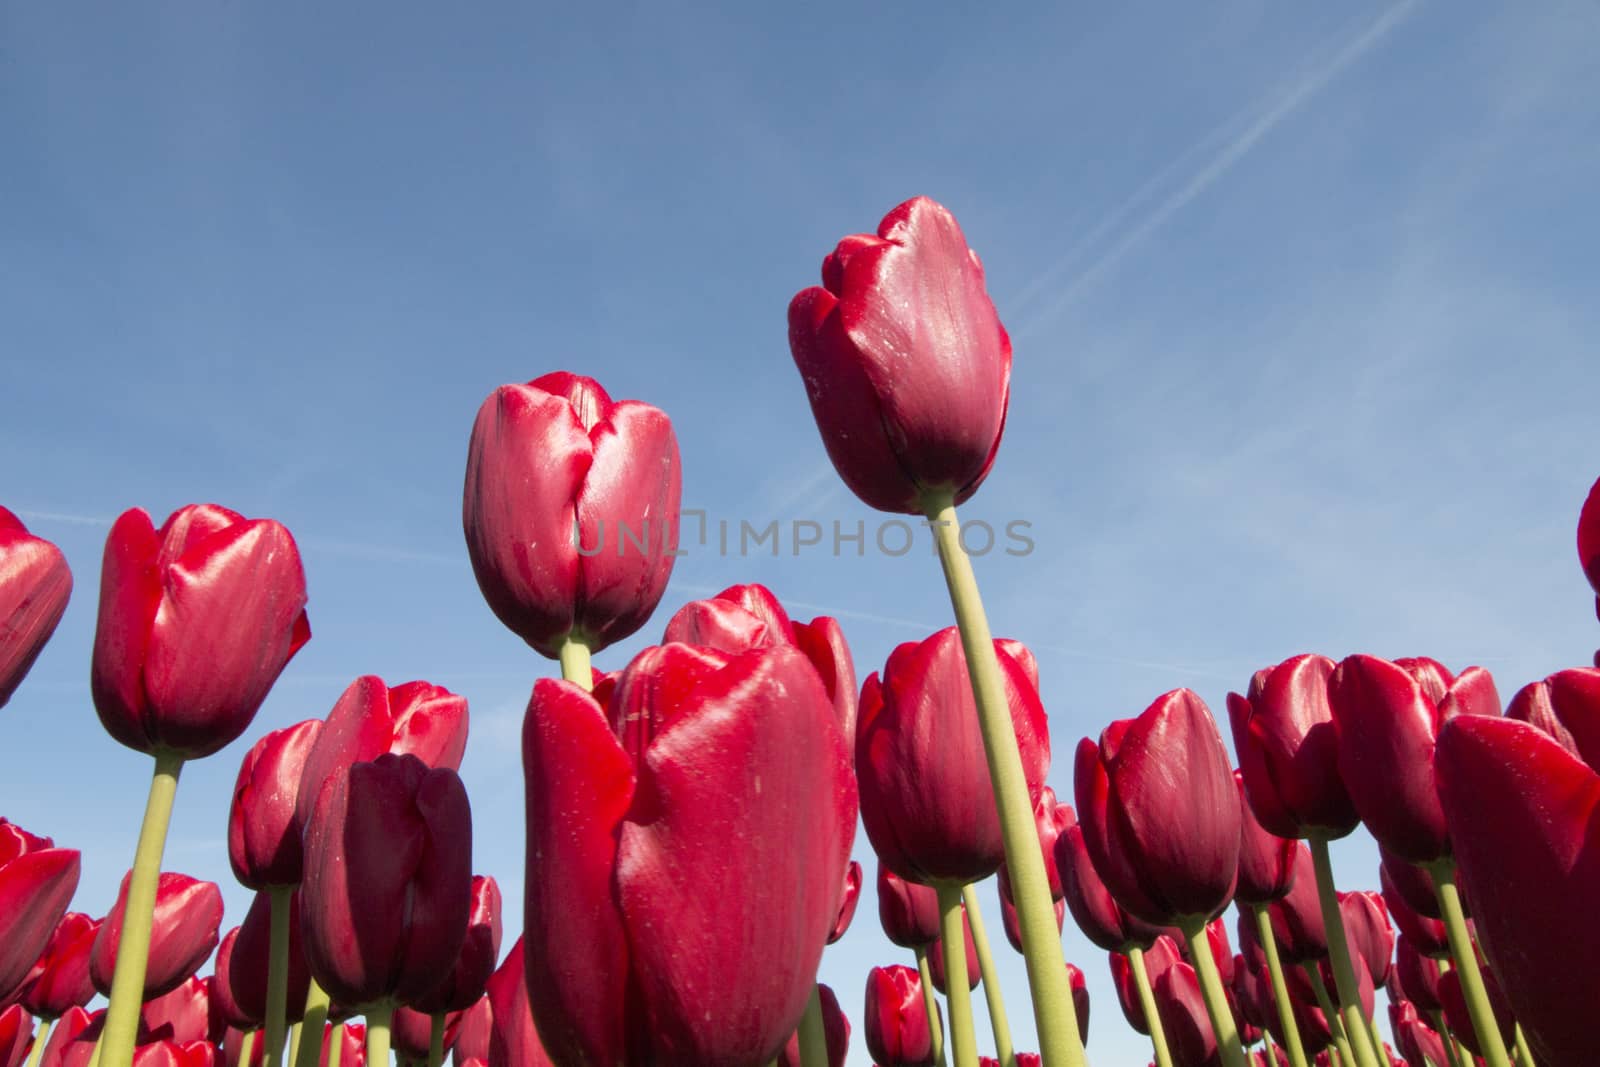 Red tulips against blue sky by avanheertum